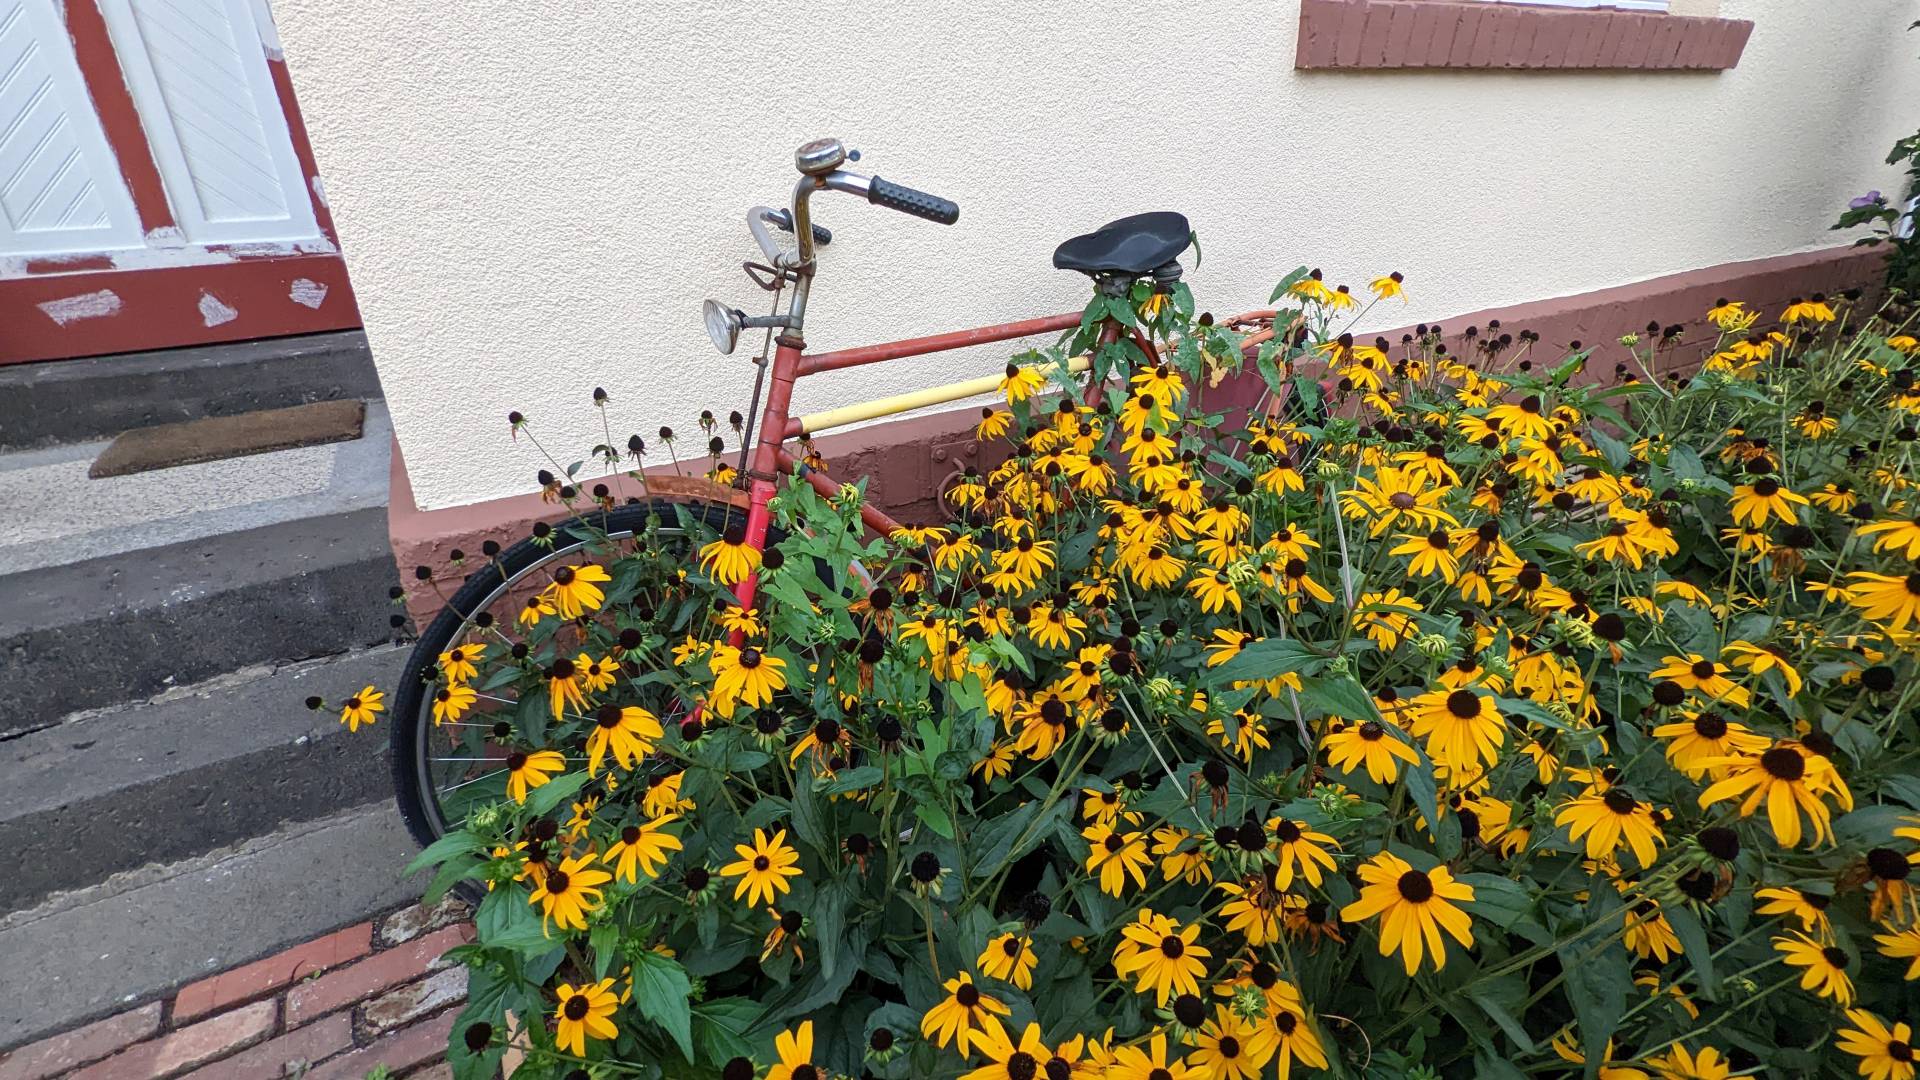 Ein altes, rotes Fahrrad steht an einer Hauswand gelehnt. Es wird überwiegend verdeckt von Blumen und Blumengrün. Man sieht schon leichten rost und abblätternde, rote Farbe.